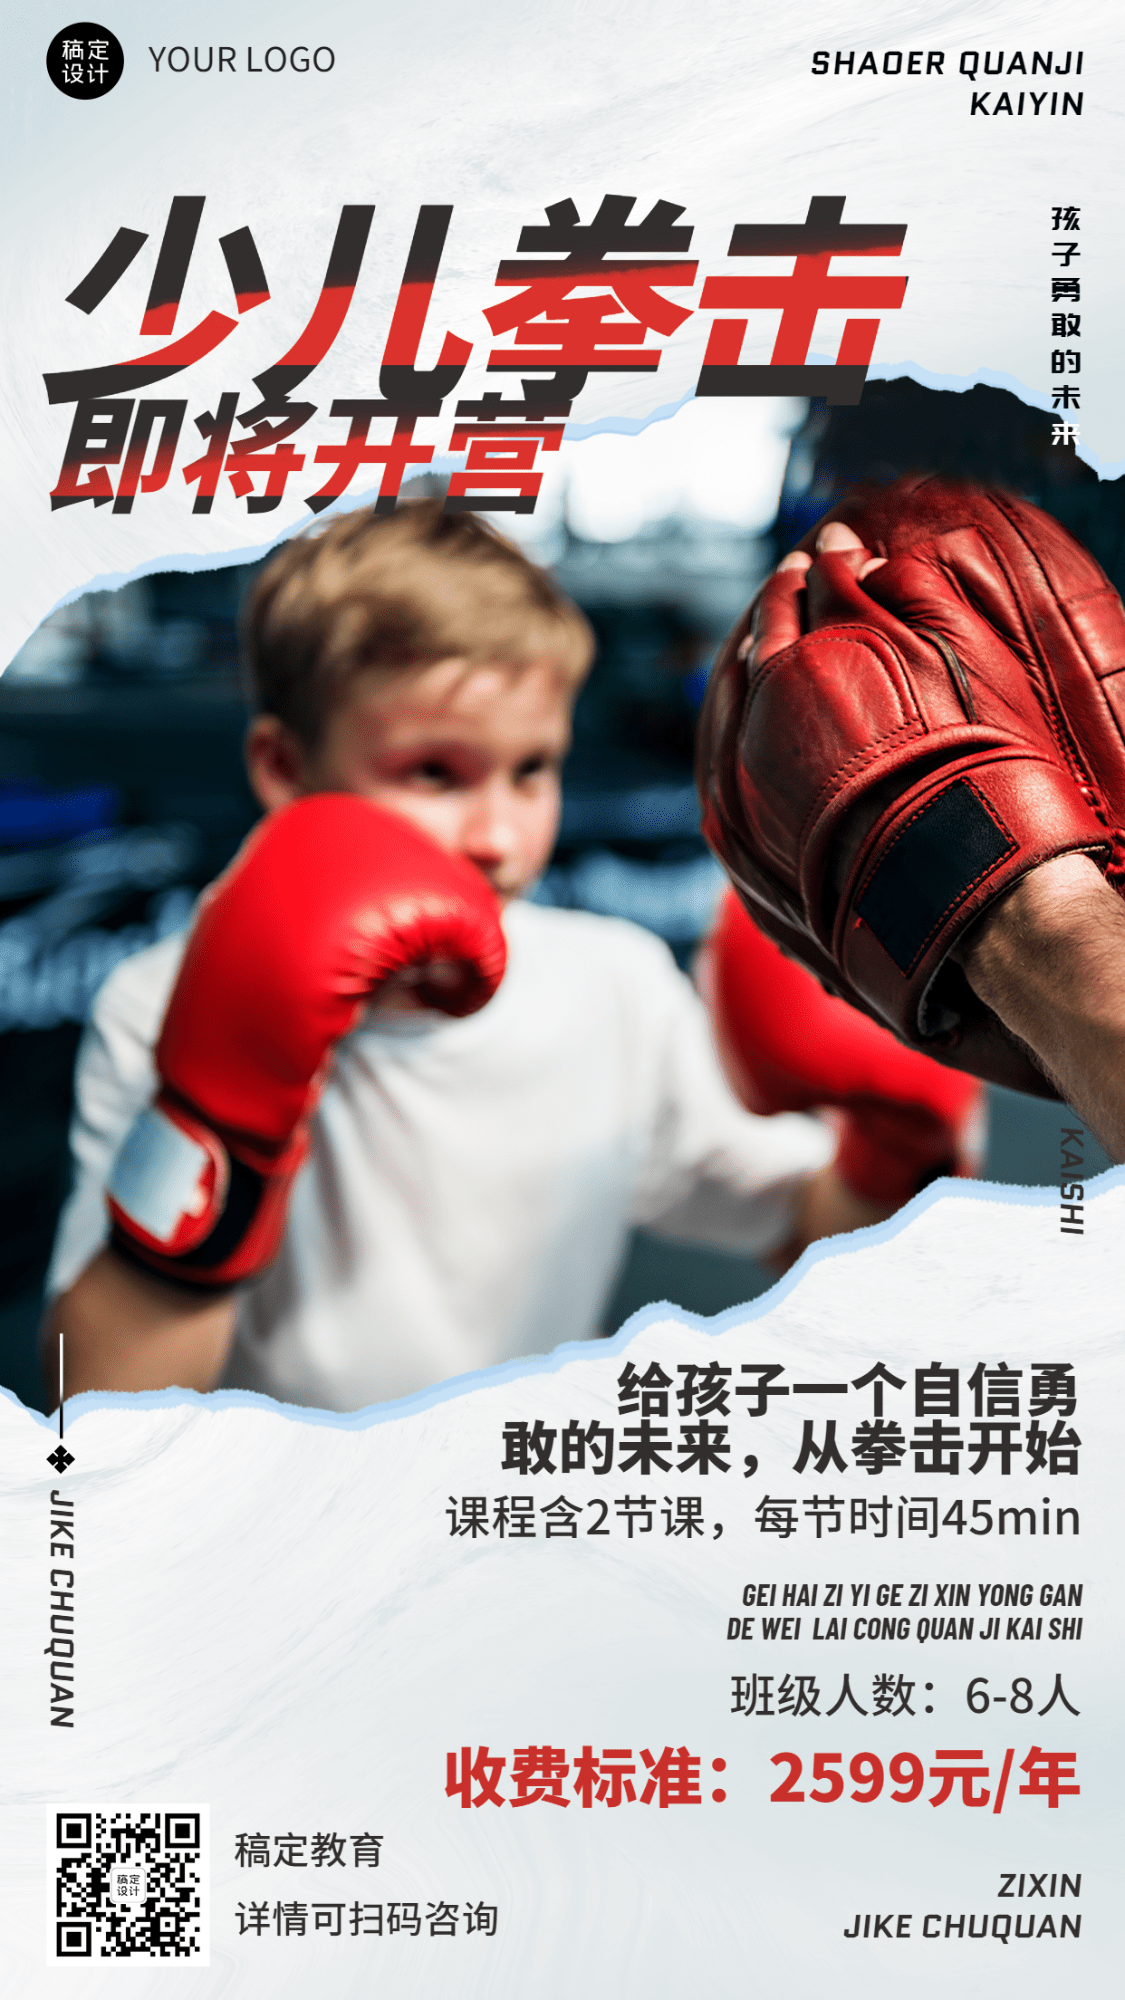 少儿跆拳道培训课程招生竖版海报预览效果